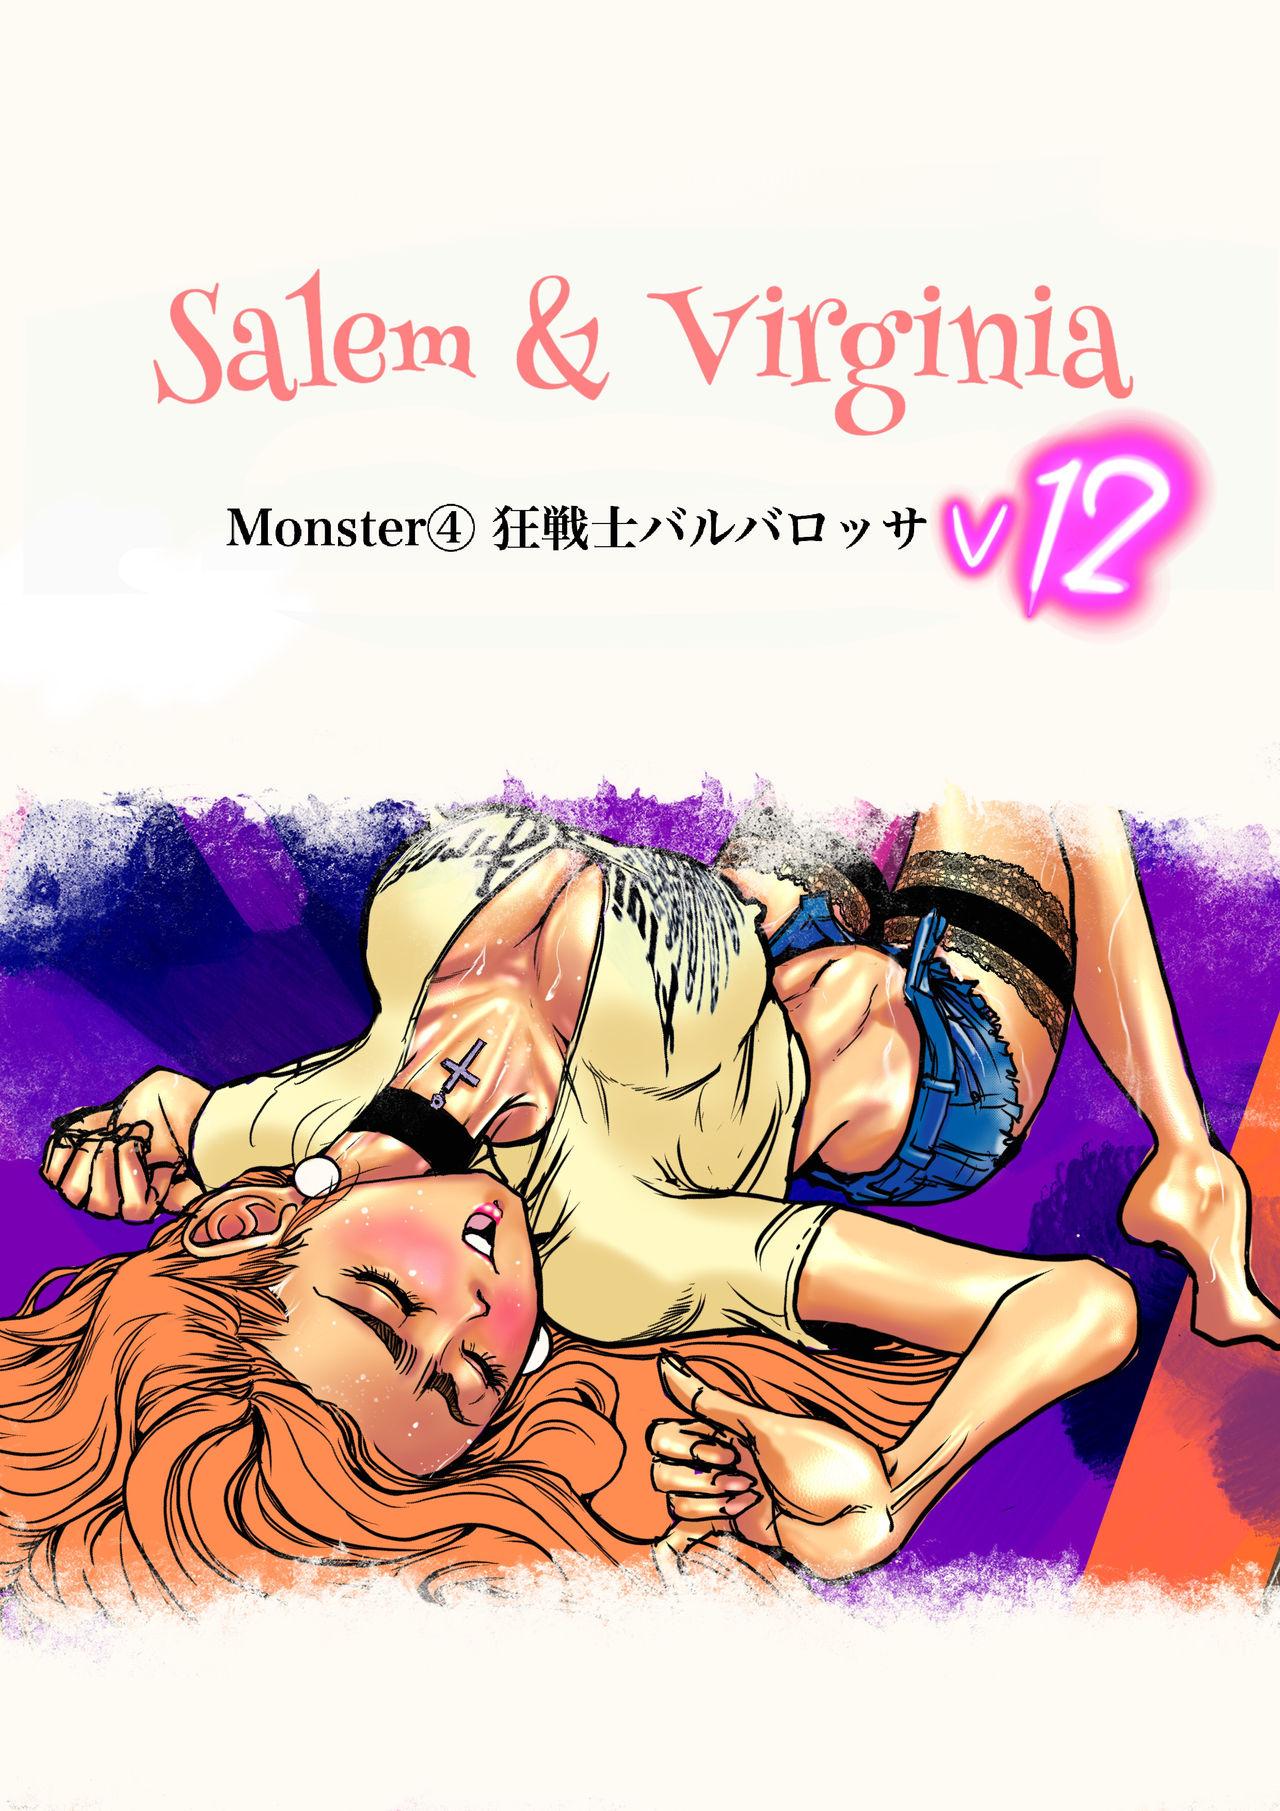 Salem & Virginia 122